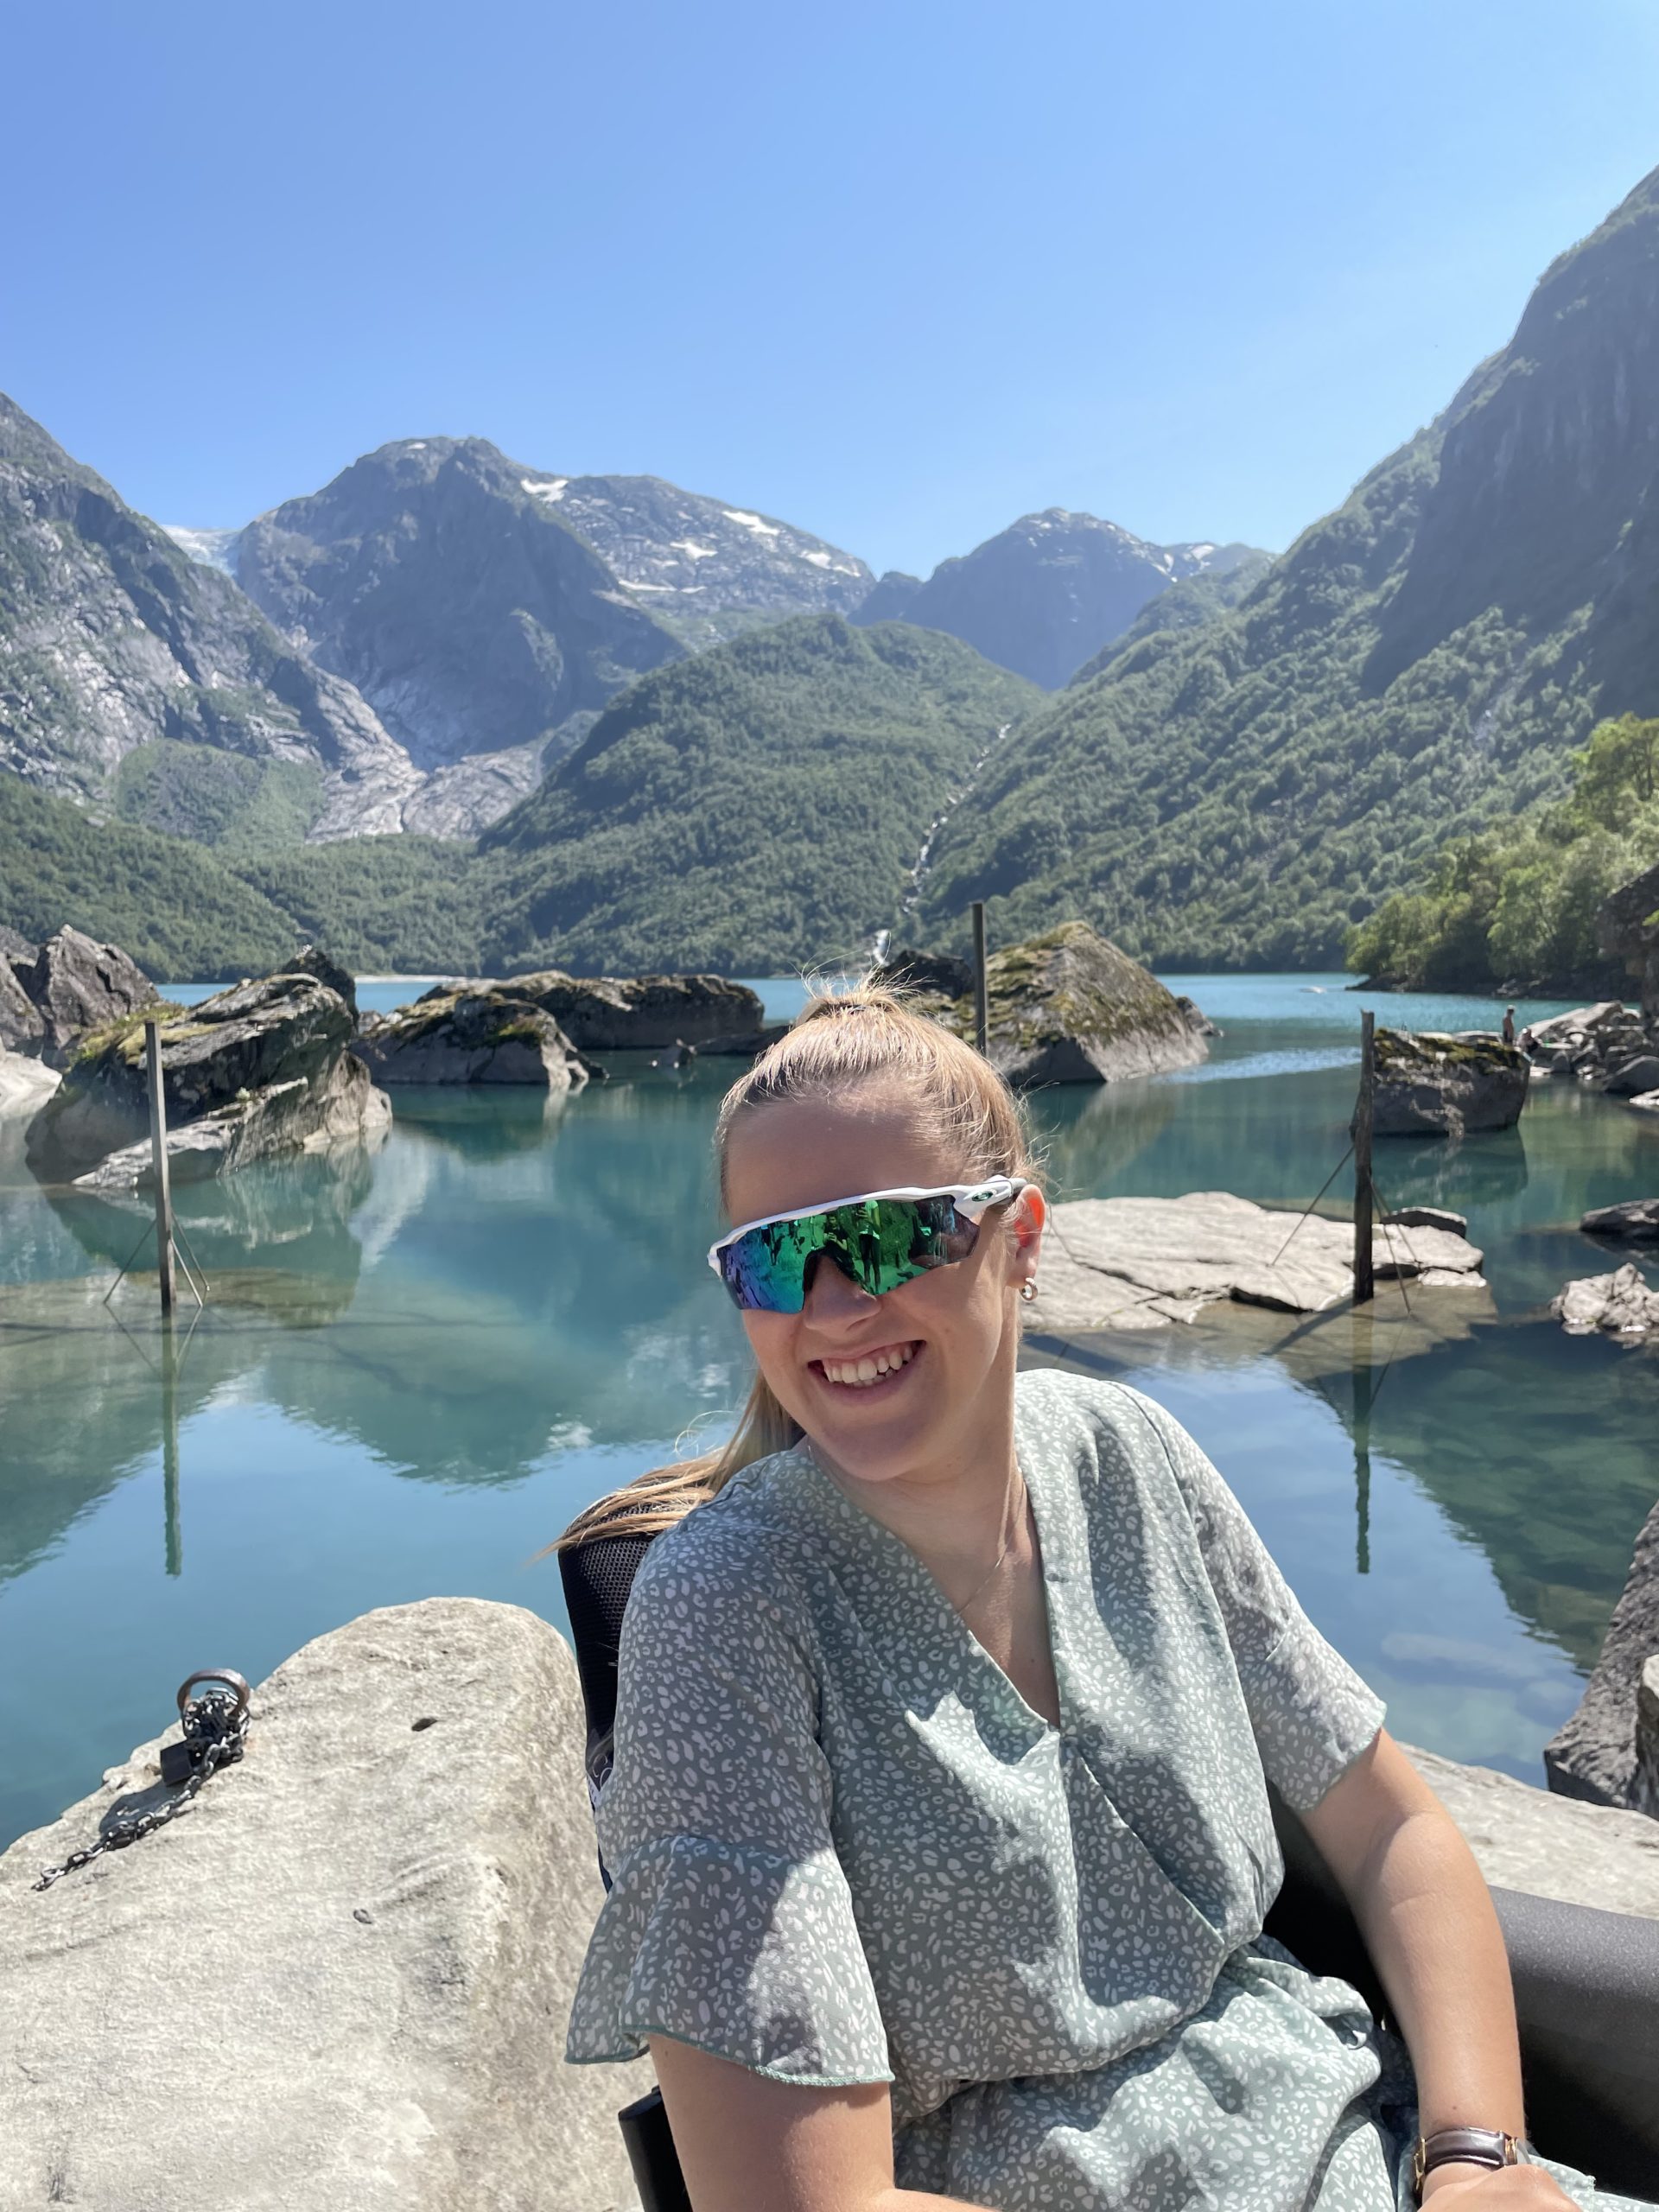 Hannah har på raske skibriller og sitter i en grønngrå kjole i rullestolen sin foran en innsjø med fjelltopper i bakgrunnen. Smiler stort og det er en solfylt dag.